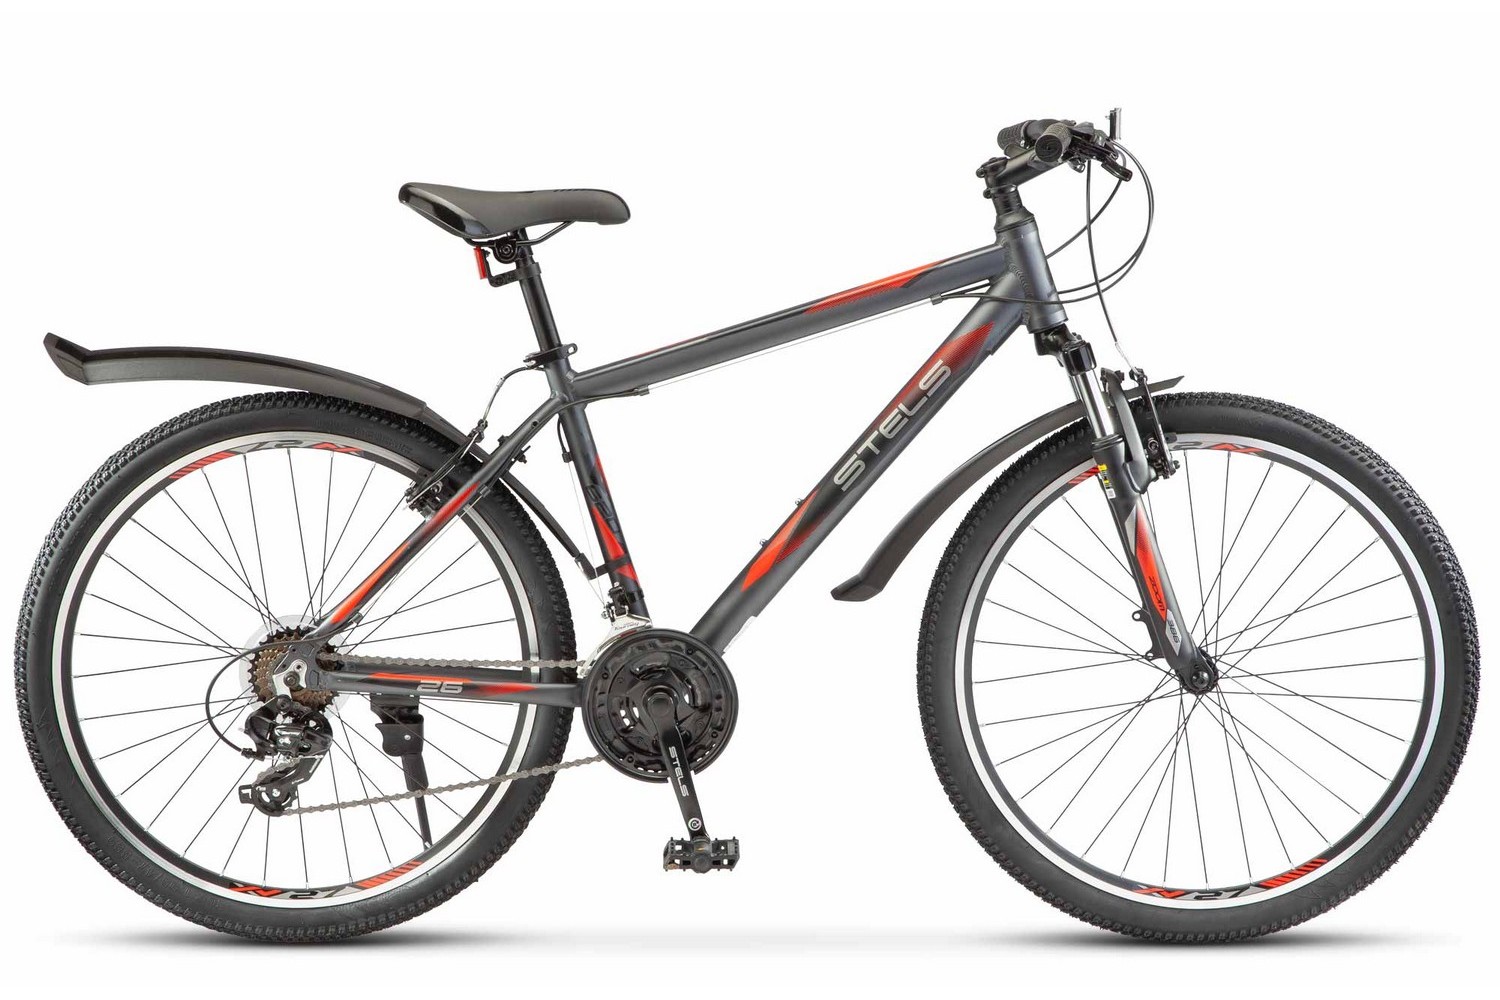 Горный велосипед Stels Navigator 620 V 26 K010, год 2023, цвет Серебристый, ростовка 19